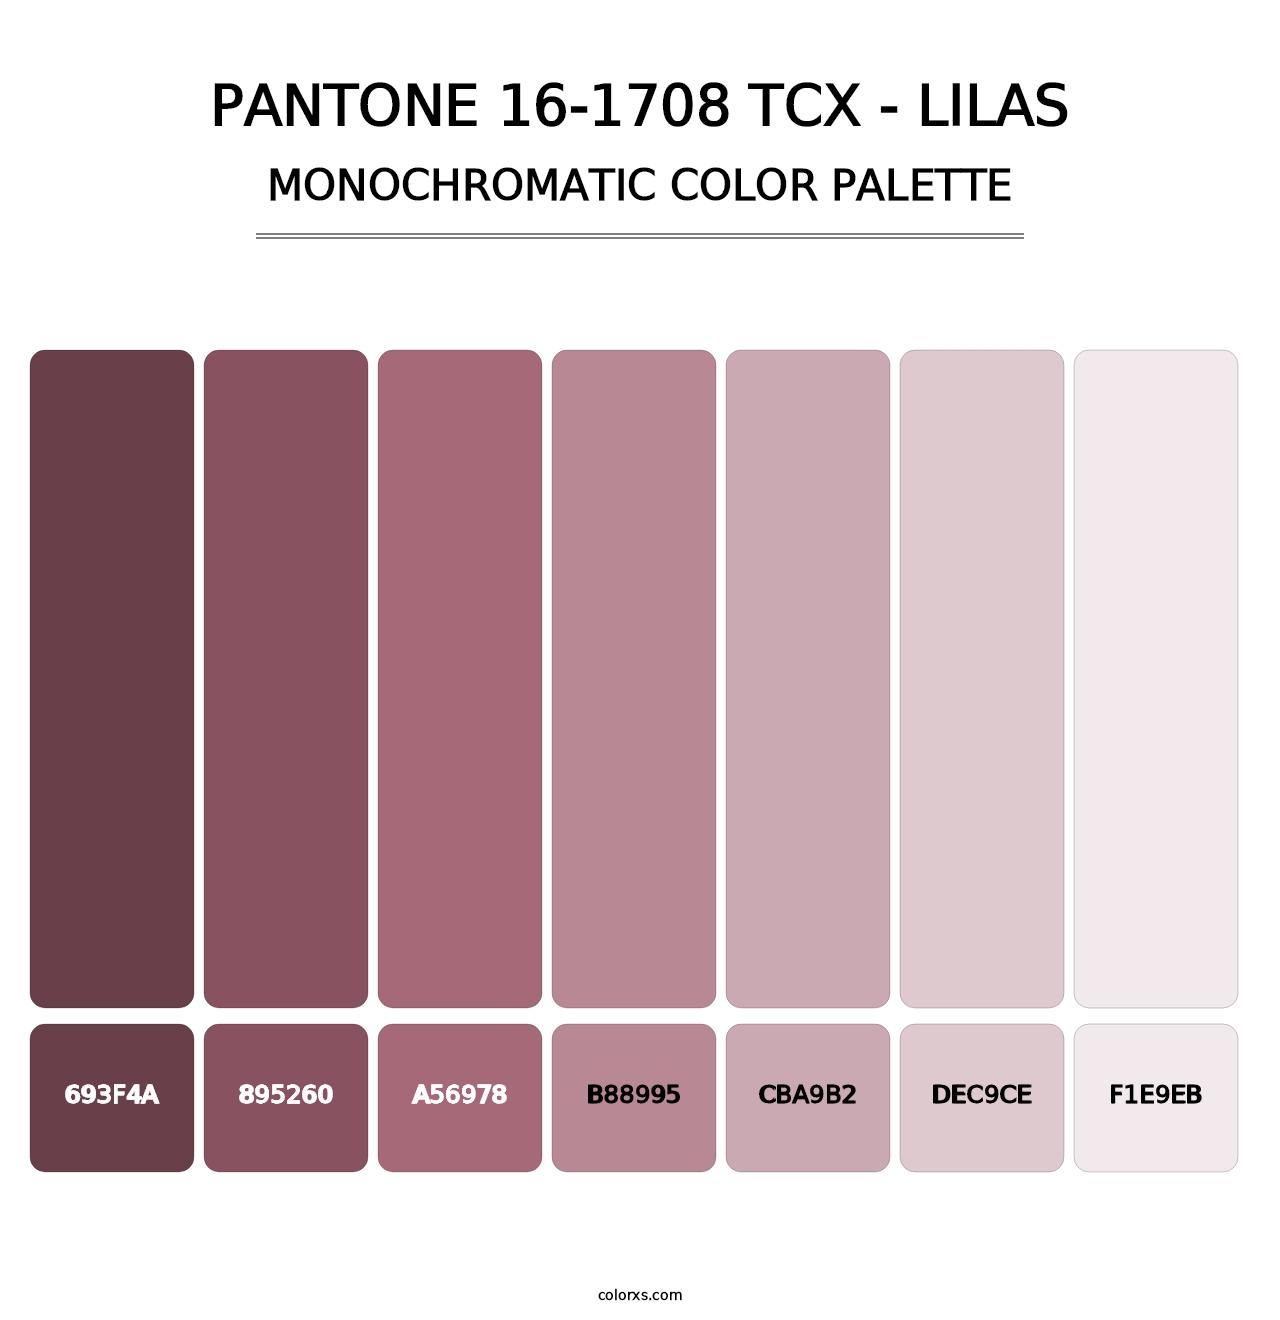 PANTONE 16-1708 TCX - Lilas - Monochromatic Color Palette